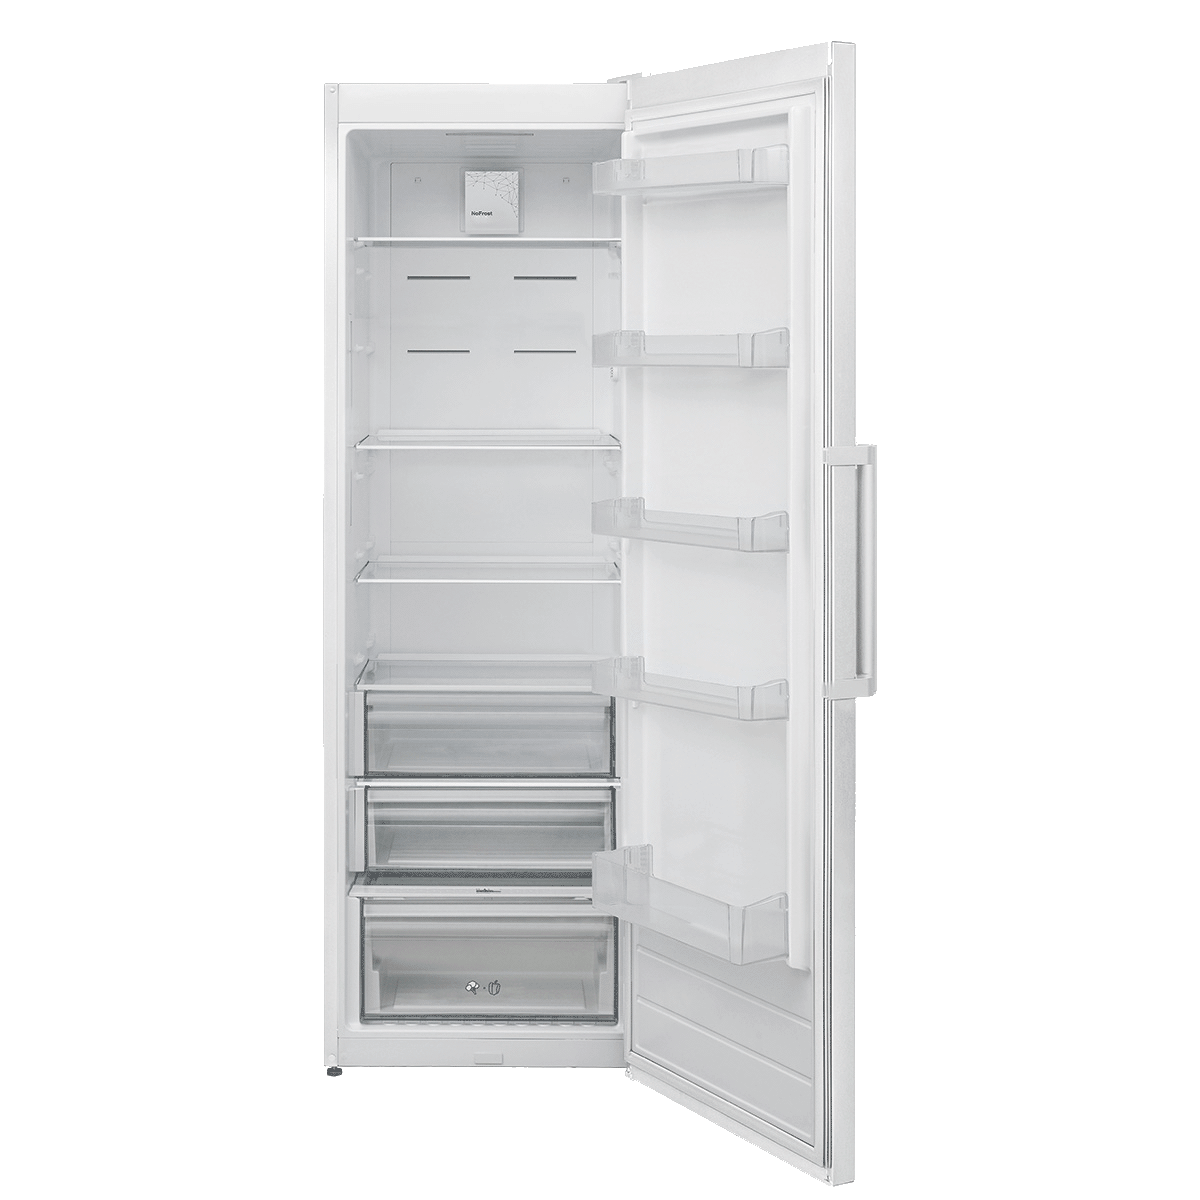 Refrigerator KS 3750 F 